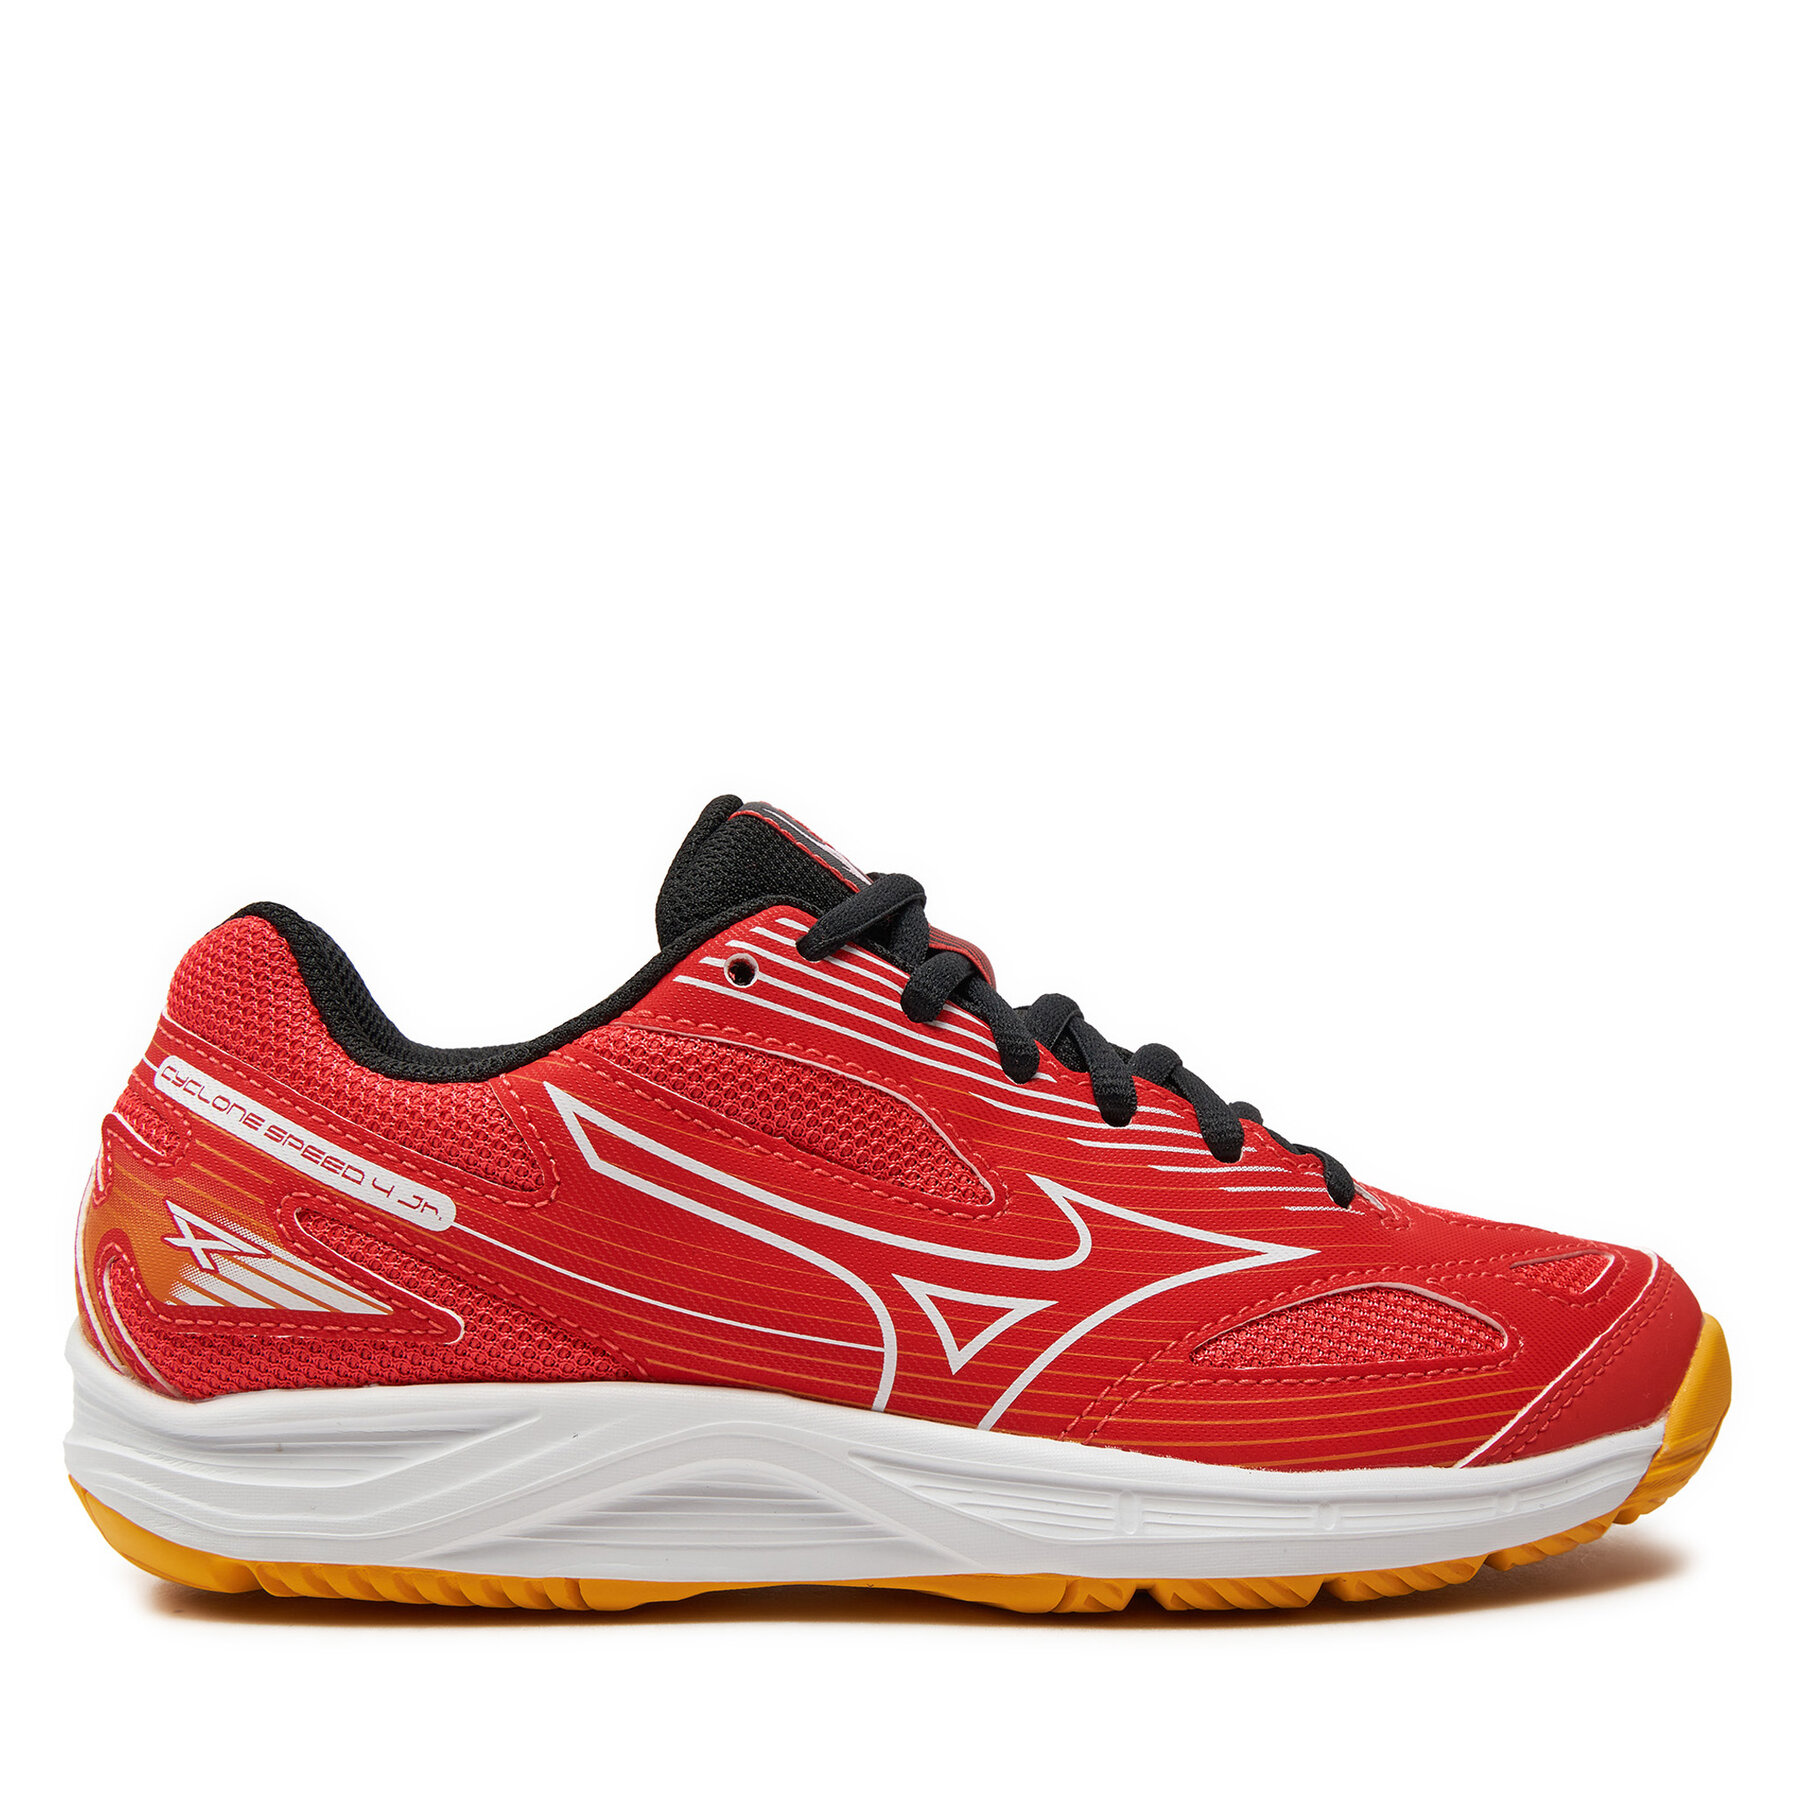 Schuhe Mizuno Cyclone Speed 4 Jr V1GD2310 Radiant Red/White/Carrot Curl 2 von Mizuno